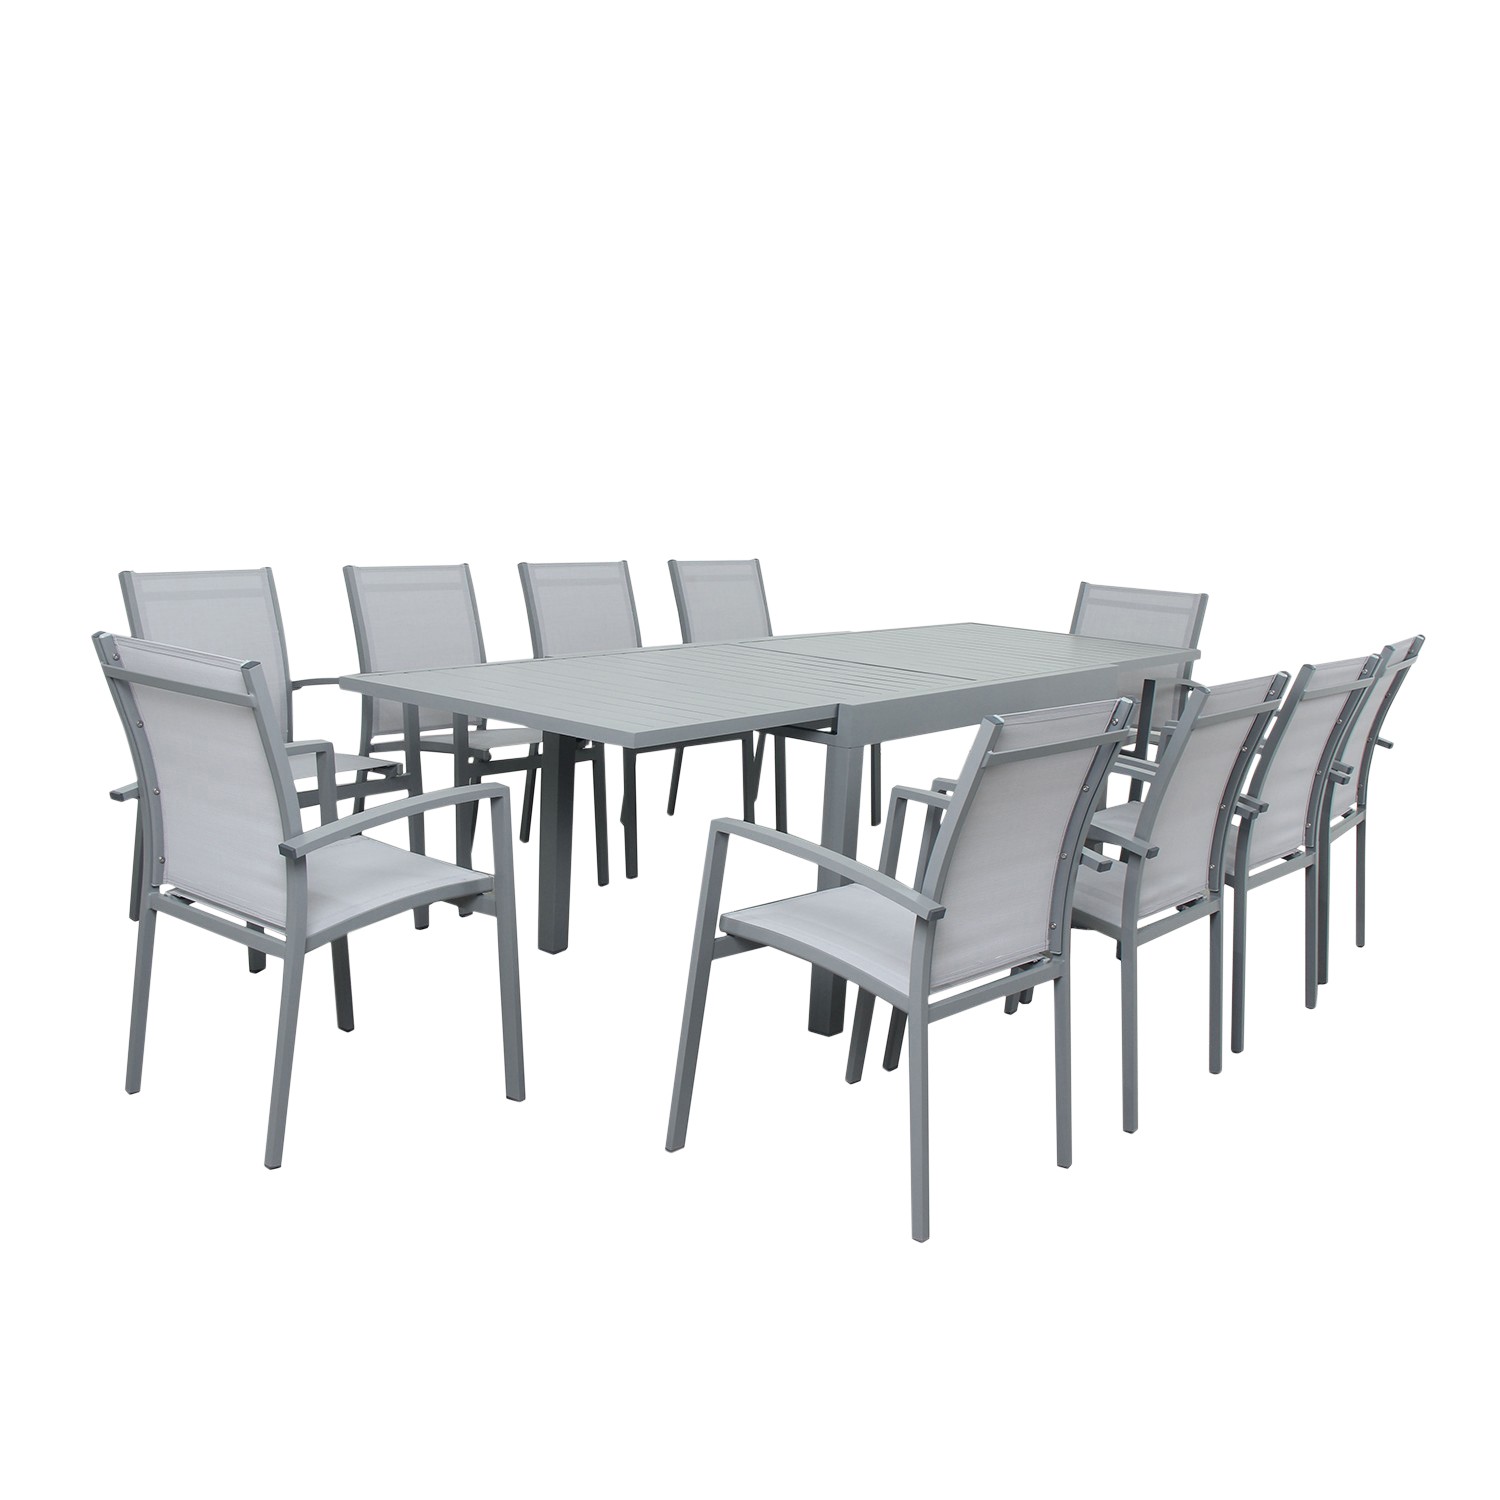 Table de jardin 10 places en aluminium gris